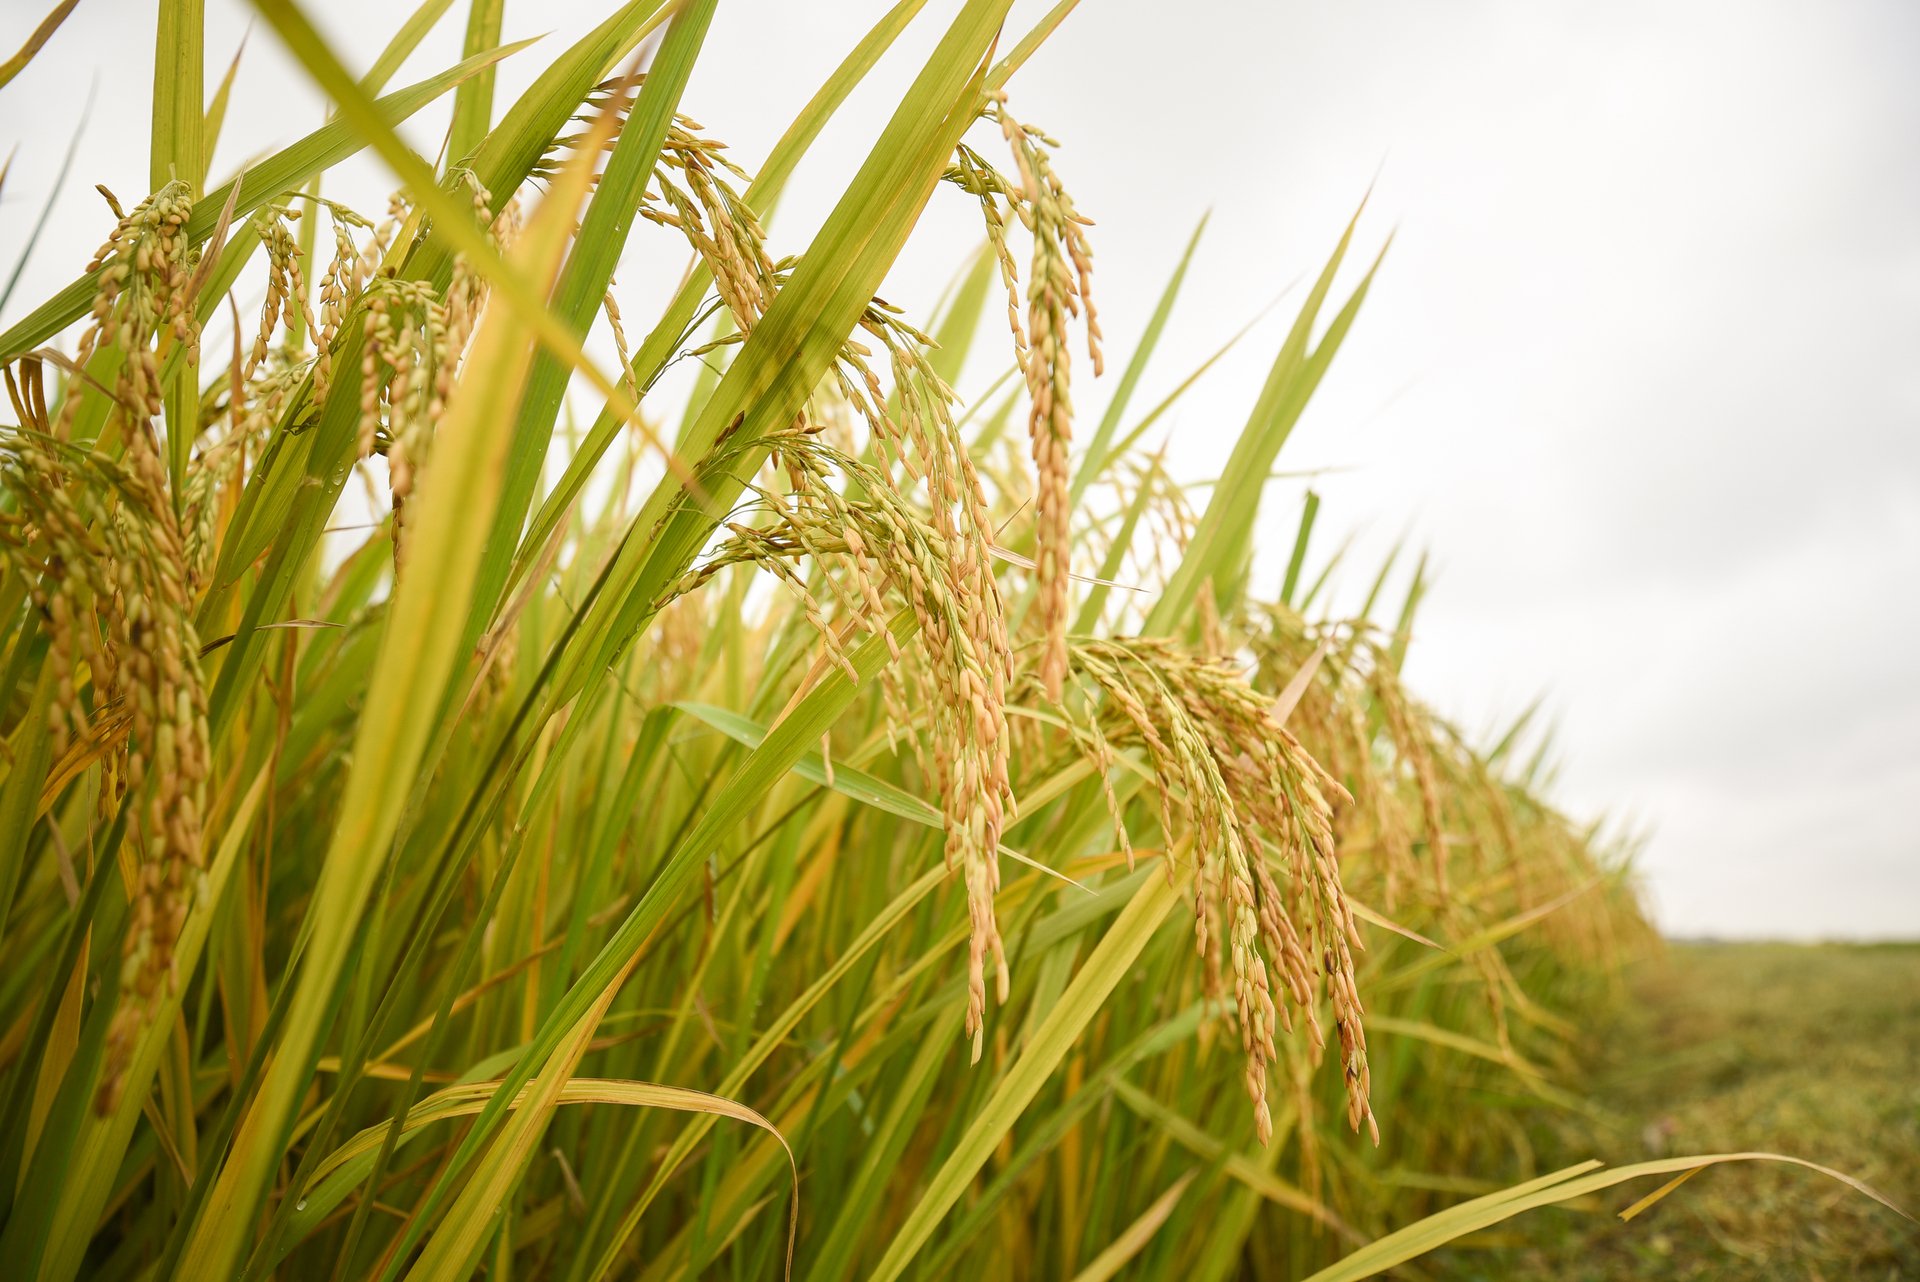 Việt Nam đủ khả năng đảm bảo an ninh lương thực với sản lượng lúa gạo hiện nay. Ảnh: Tùng Đinh.